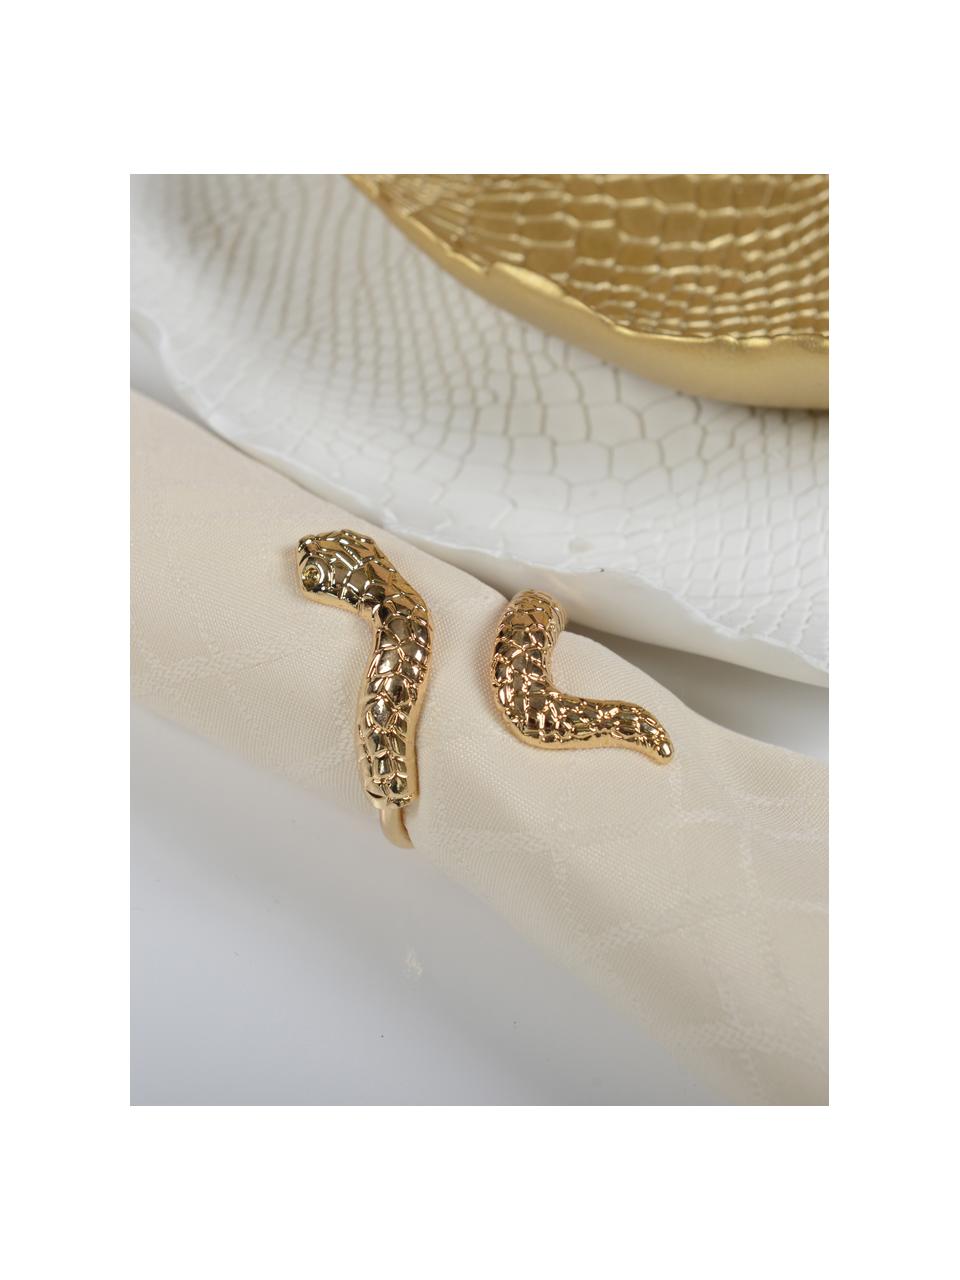 Kroužky na ubrousky s motivem hada Serpent, 4 ks, Kov, Zlatá, Ø 4 cm, V 6 cm